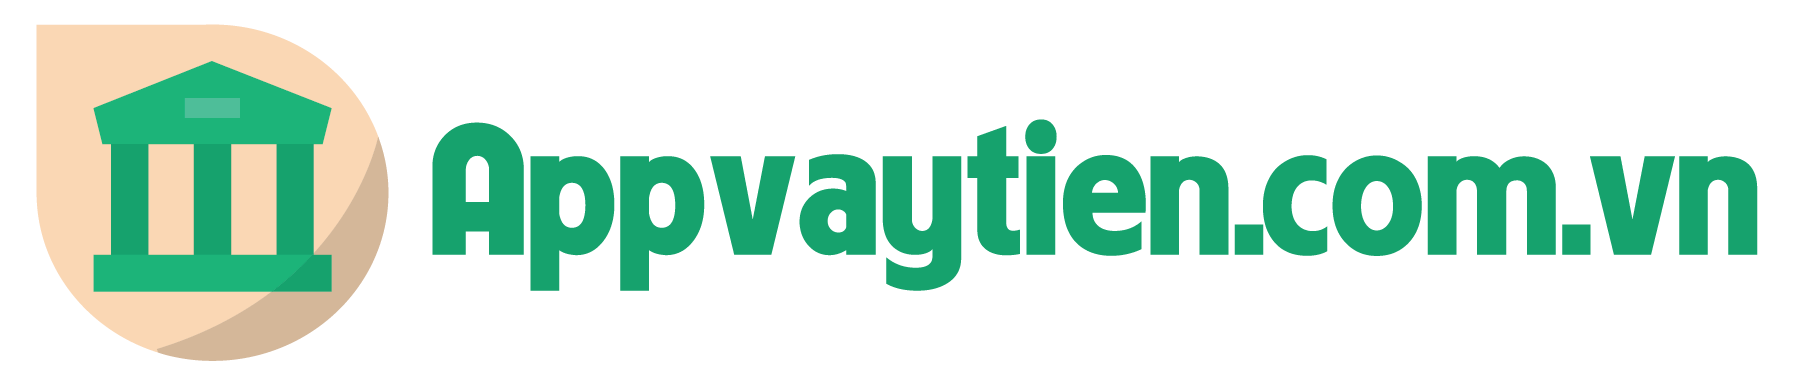 appvaytien.com.vn